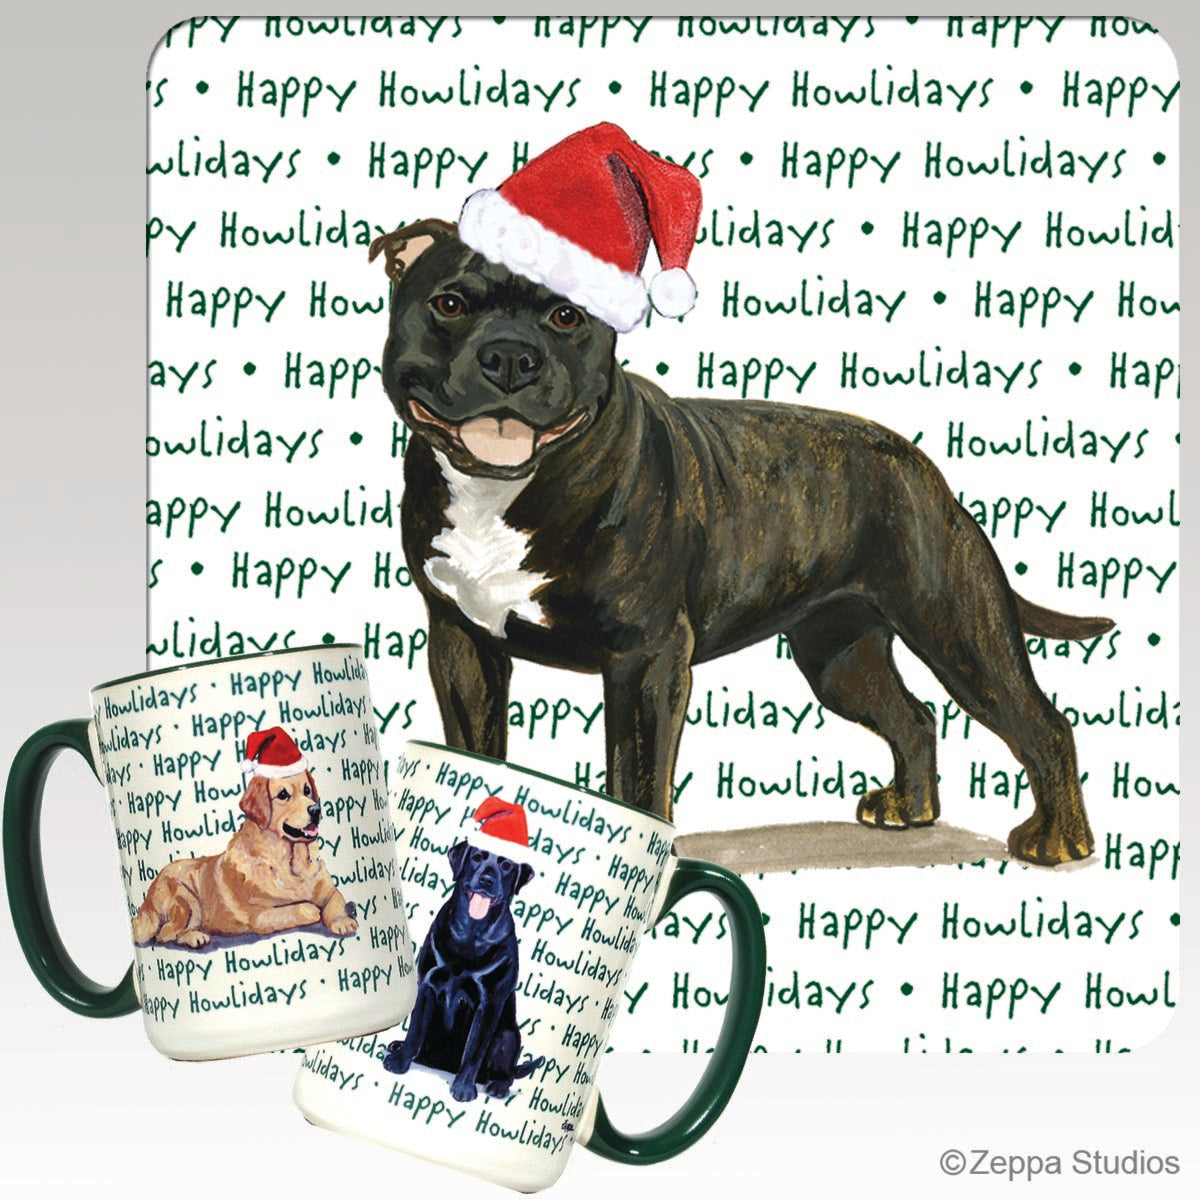 English Staffordshire Terrier Christmas Mugs